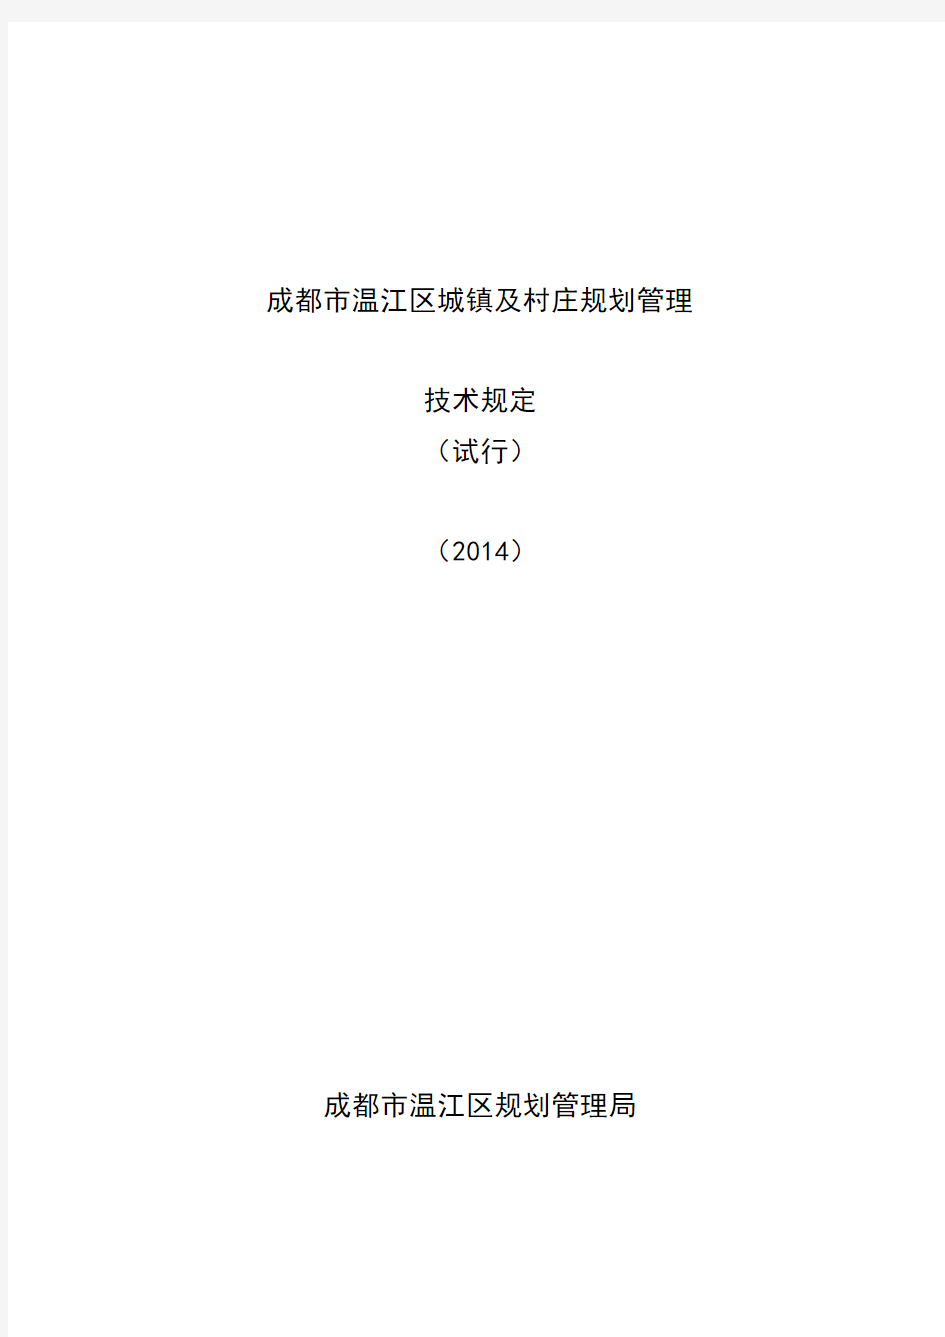 《成都市温江区城镇及村庄规划管理技术规定(试行)(2014)》